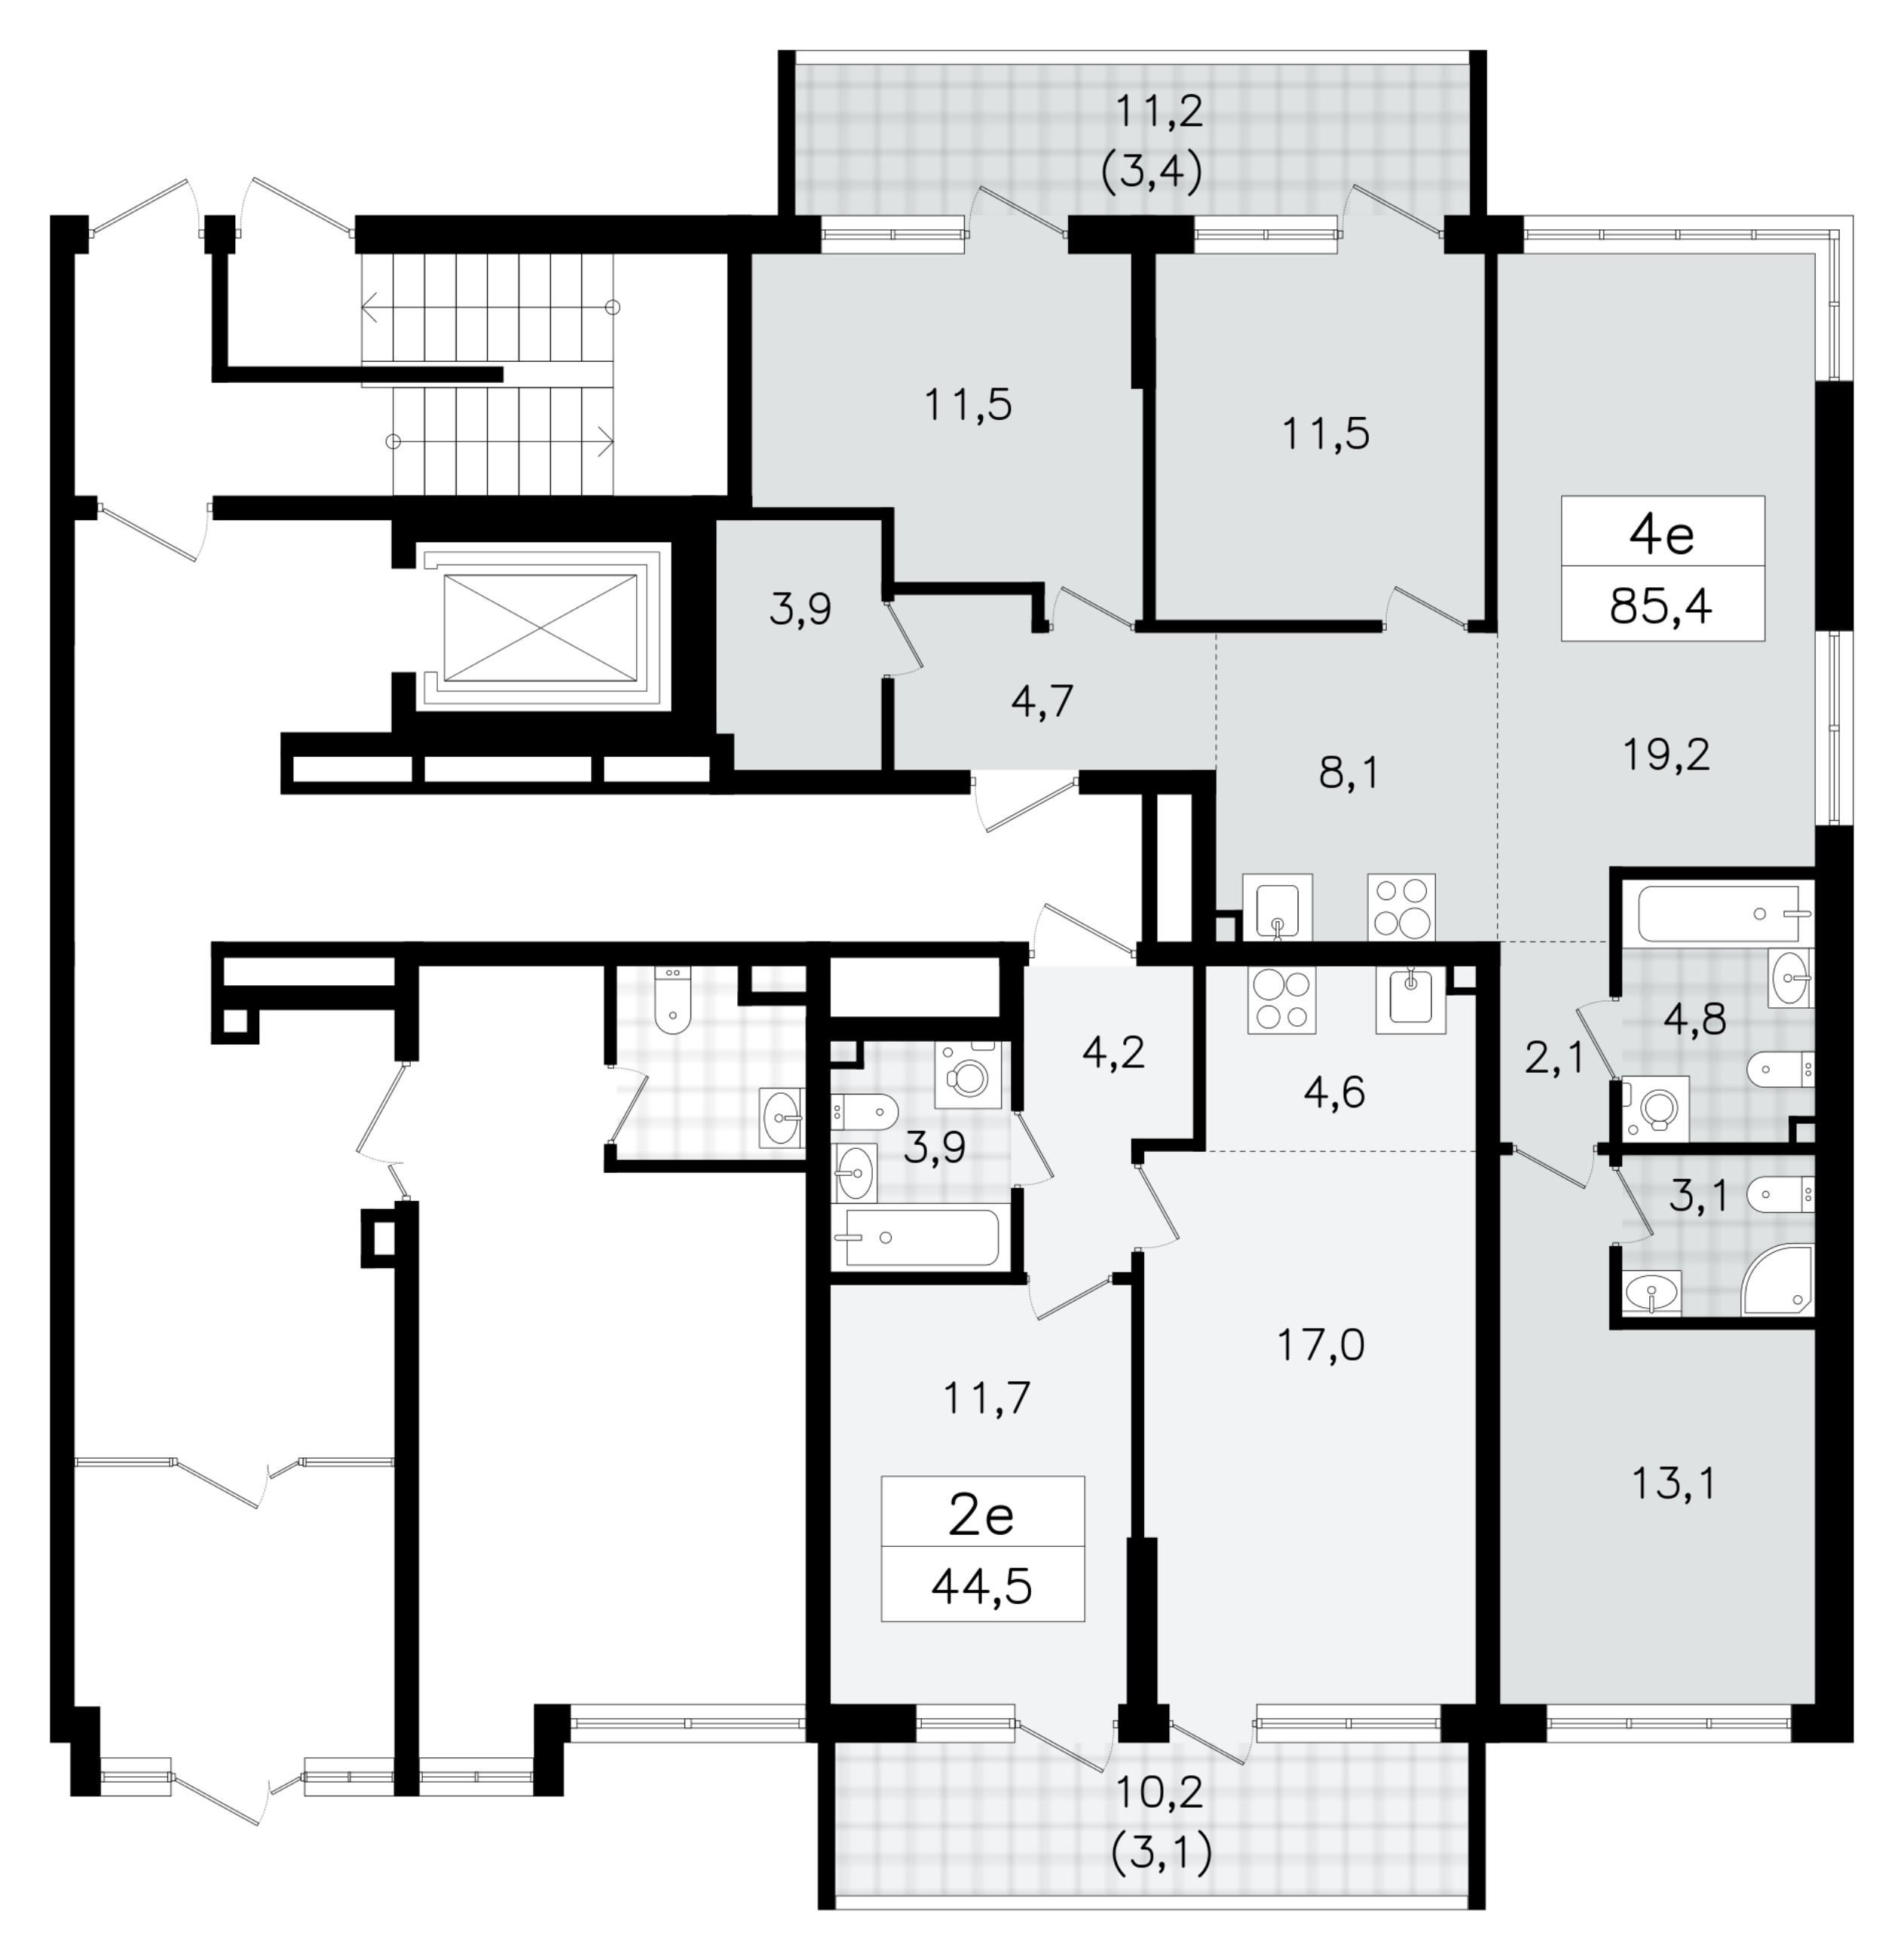 4-комнатная (Евро) квартира, 85.4 м² в ЖК "А101 Всеволожск" - планировка этажа